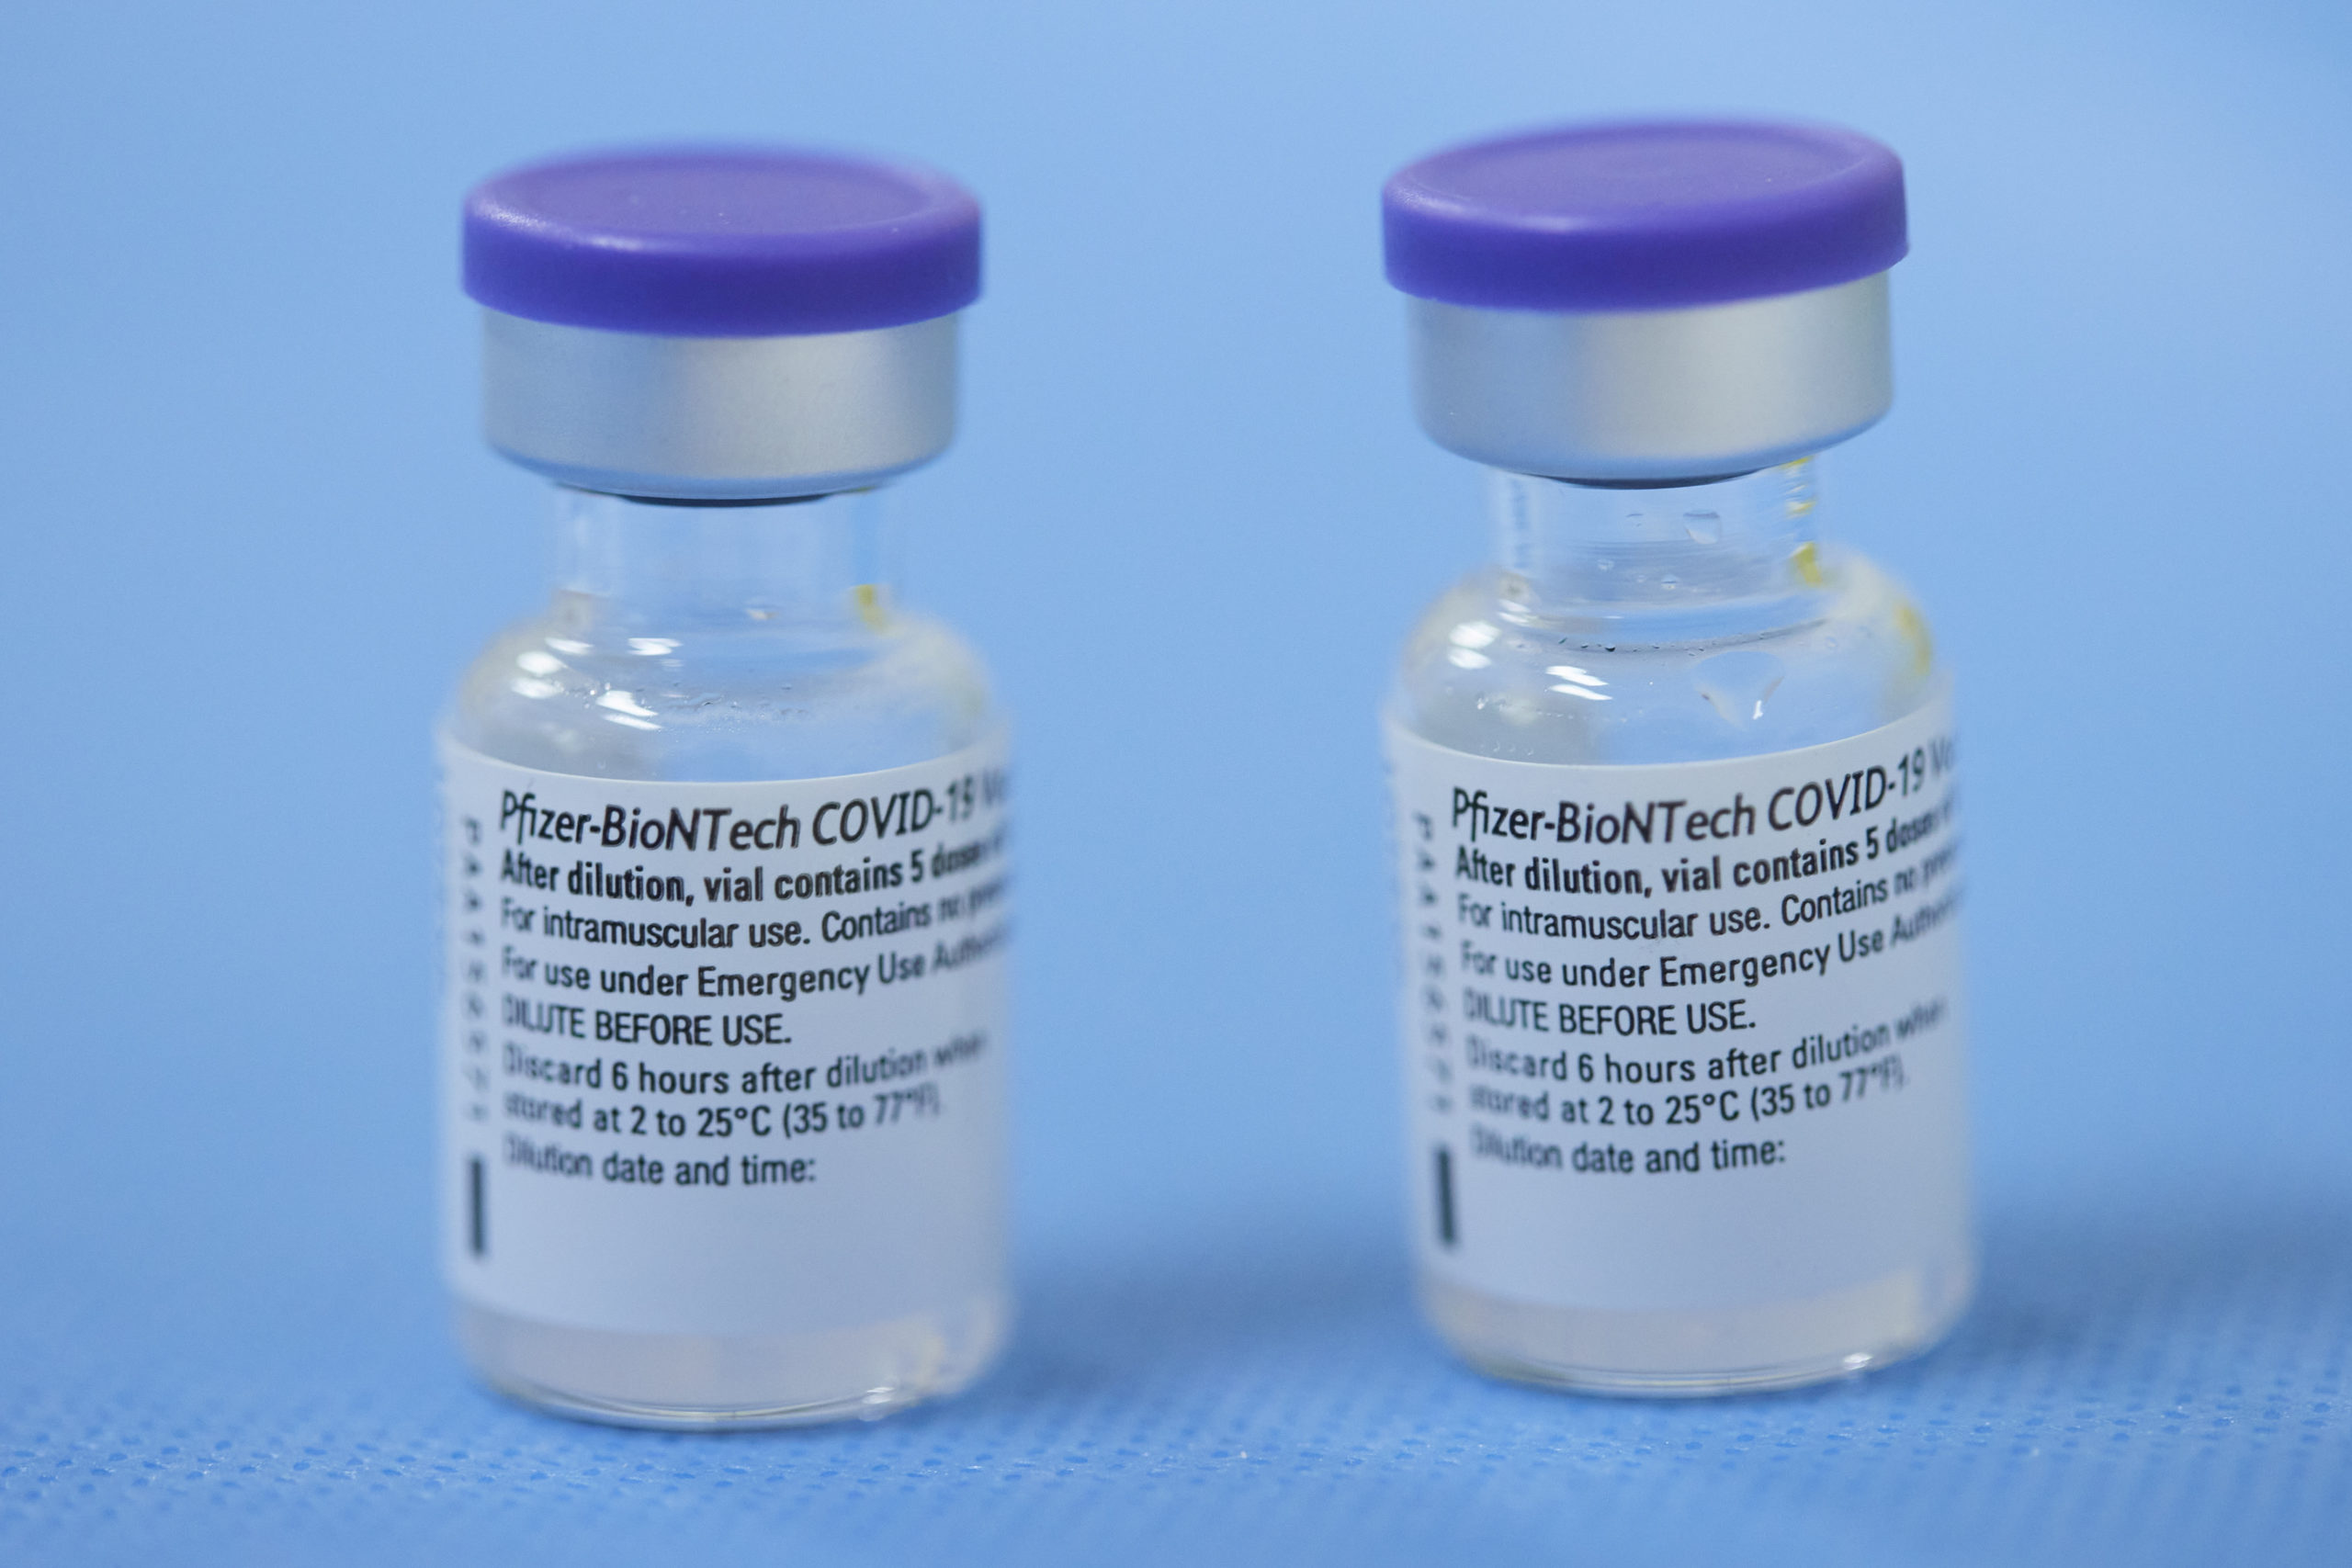 Le vaccin Pfizer réduirait les risques de transmission du coronavirus, selon deux études